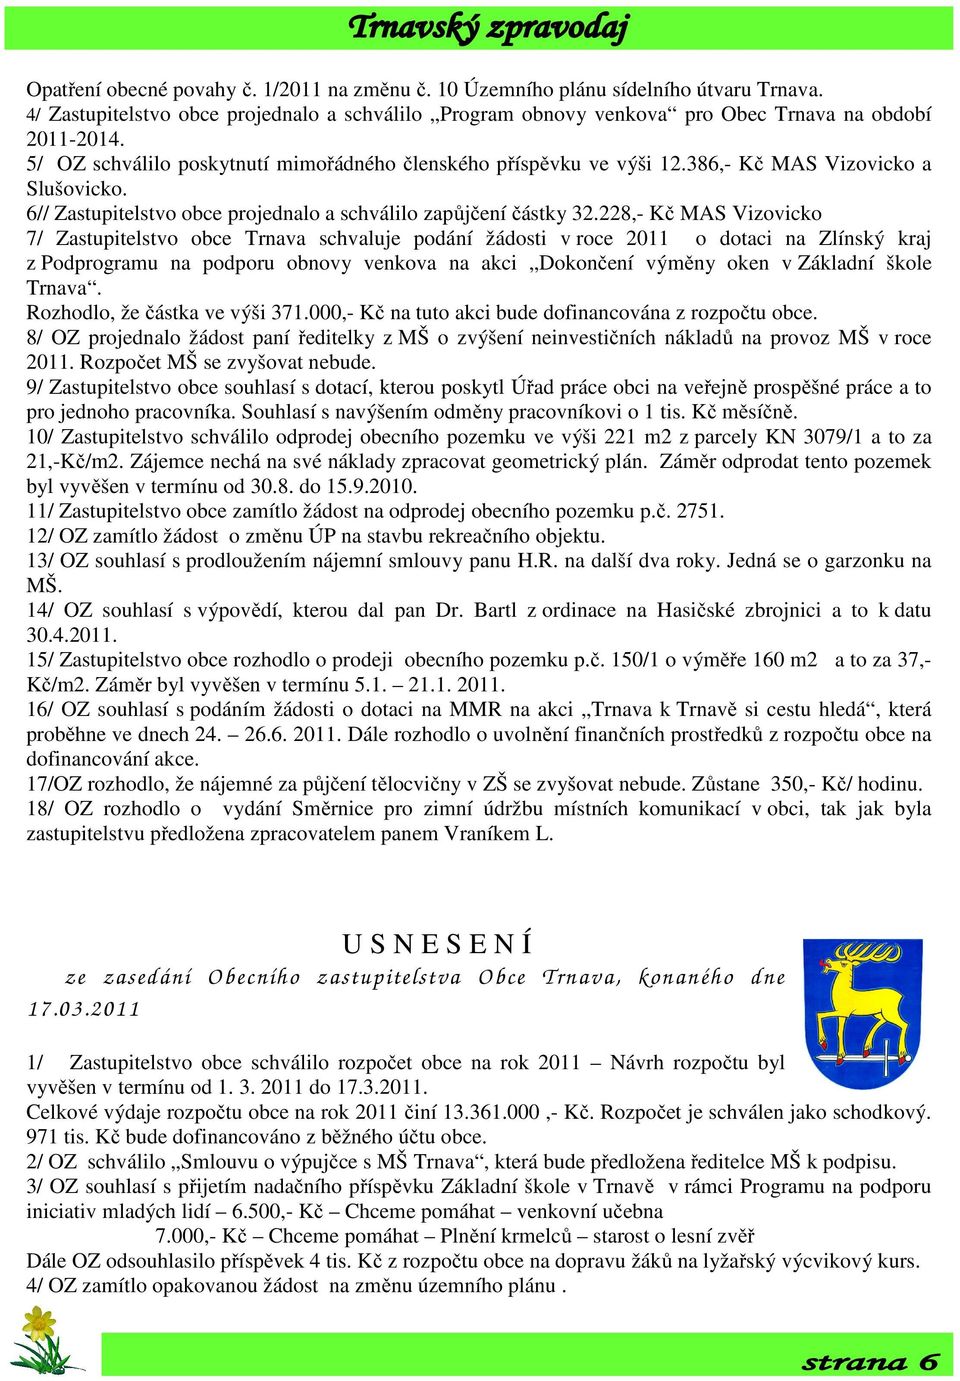 228,- Kč MAS Vizovicko 7/ Zastupitelstvo obce Trnava schvaluje podání žádosti v roce 2011 o dotaci na Zlínský kraj z Podprogramu na podporu obnovy venkova na akci Dokončení výměny oken v Základní